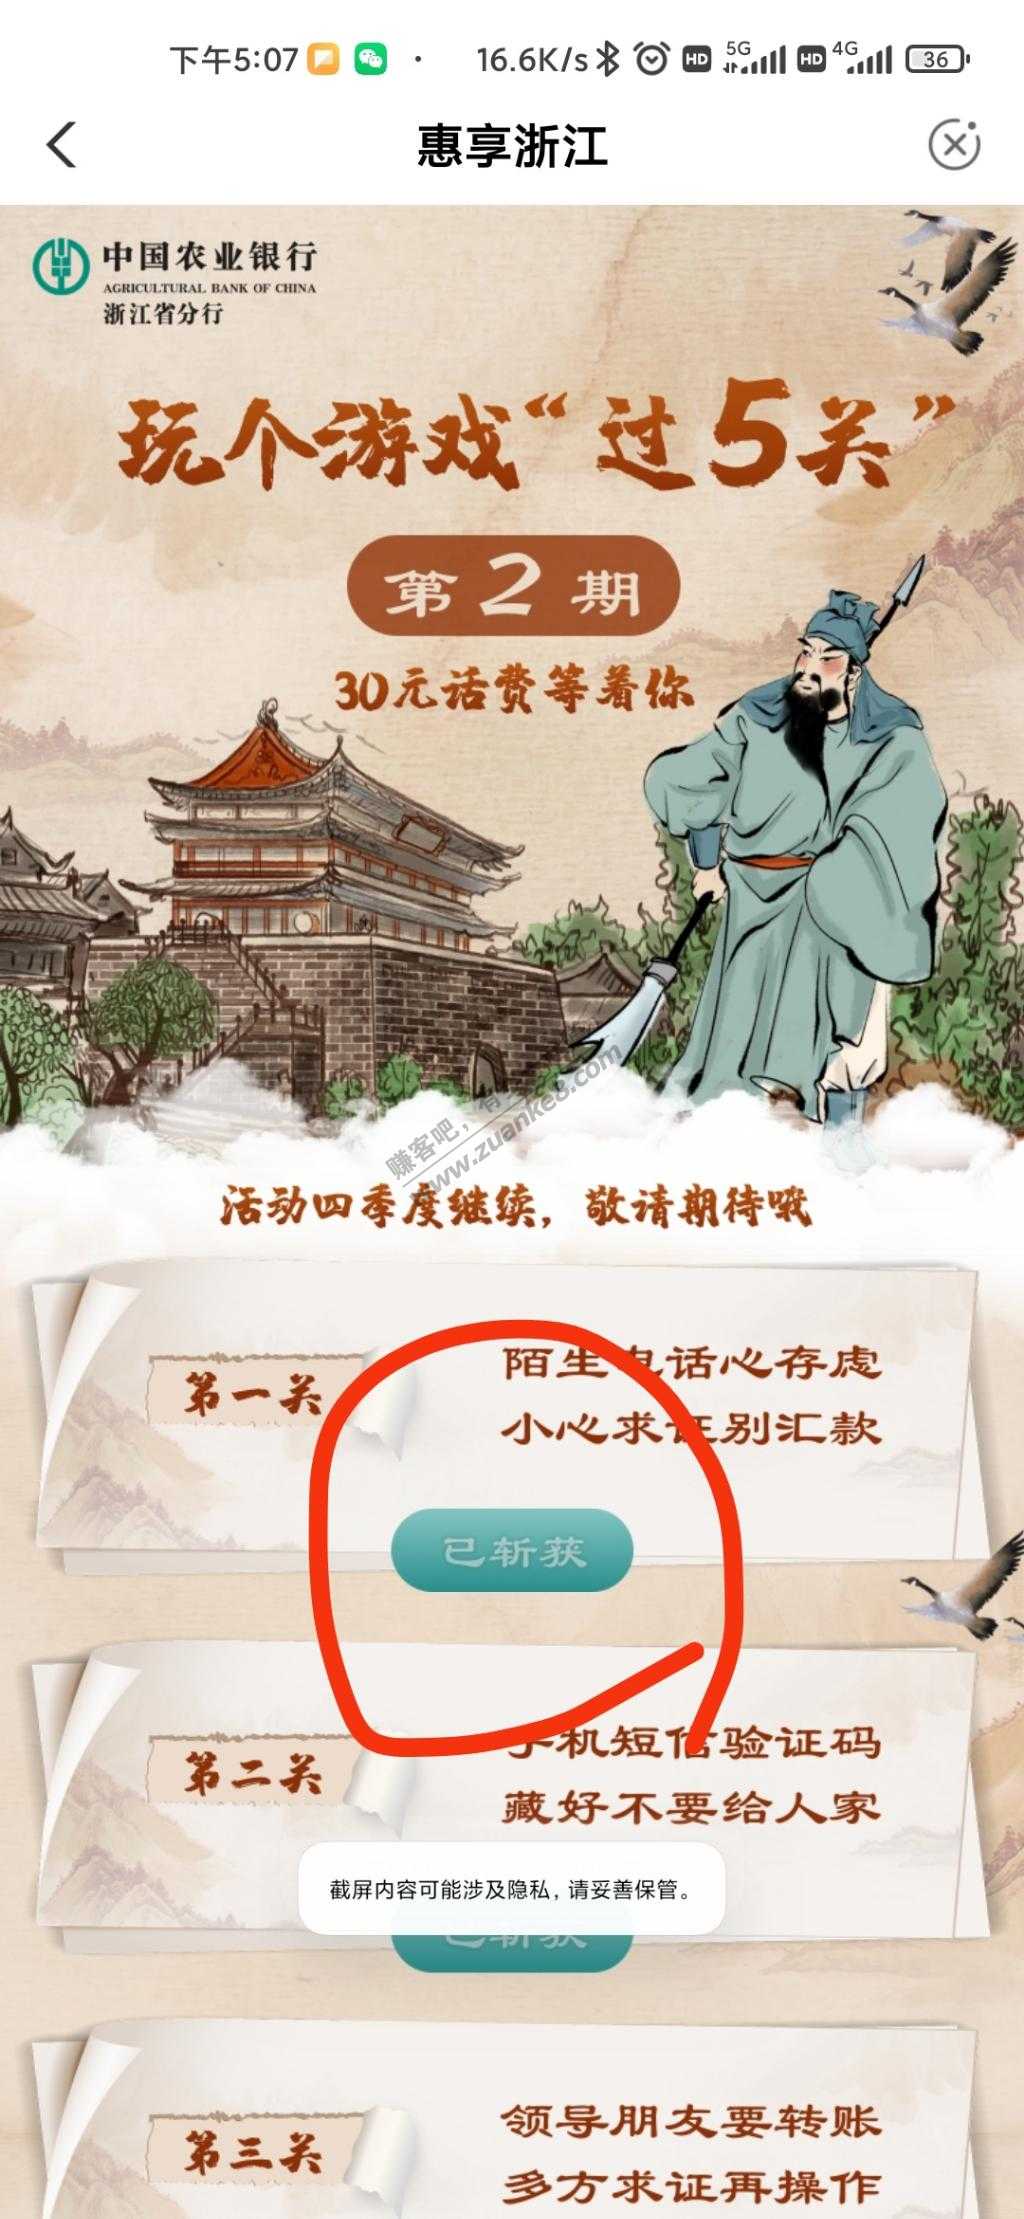 浙江农行闯关活动探讨下步骤-惠小助(52huixz.com)